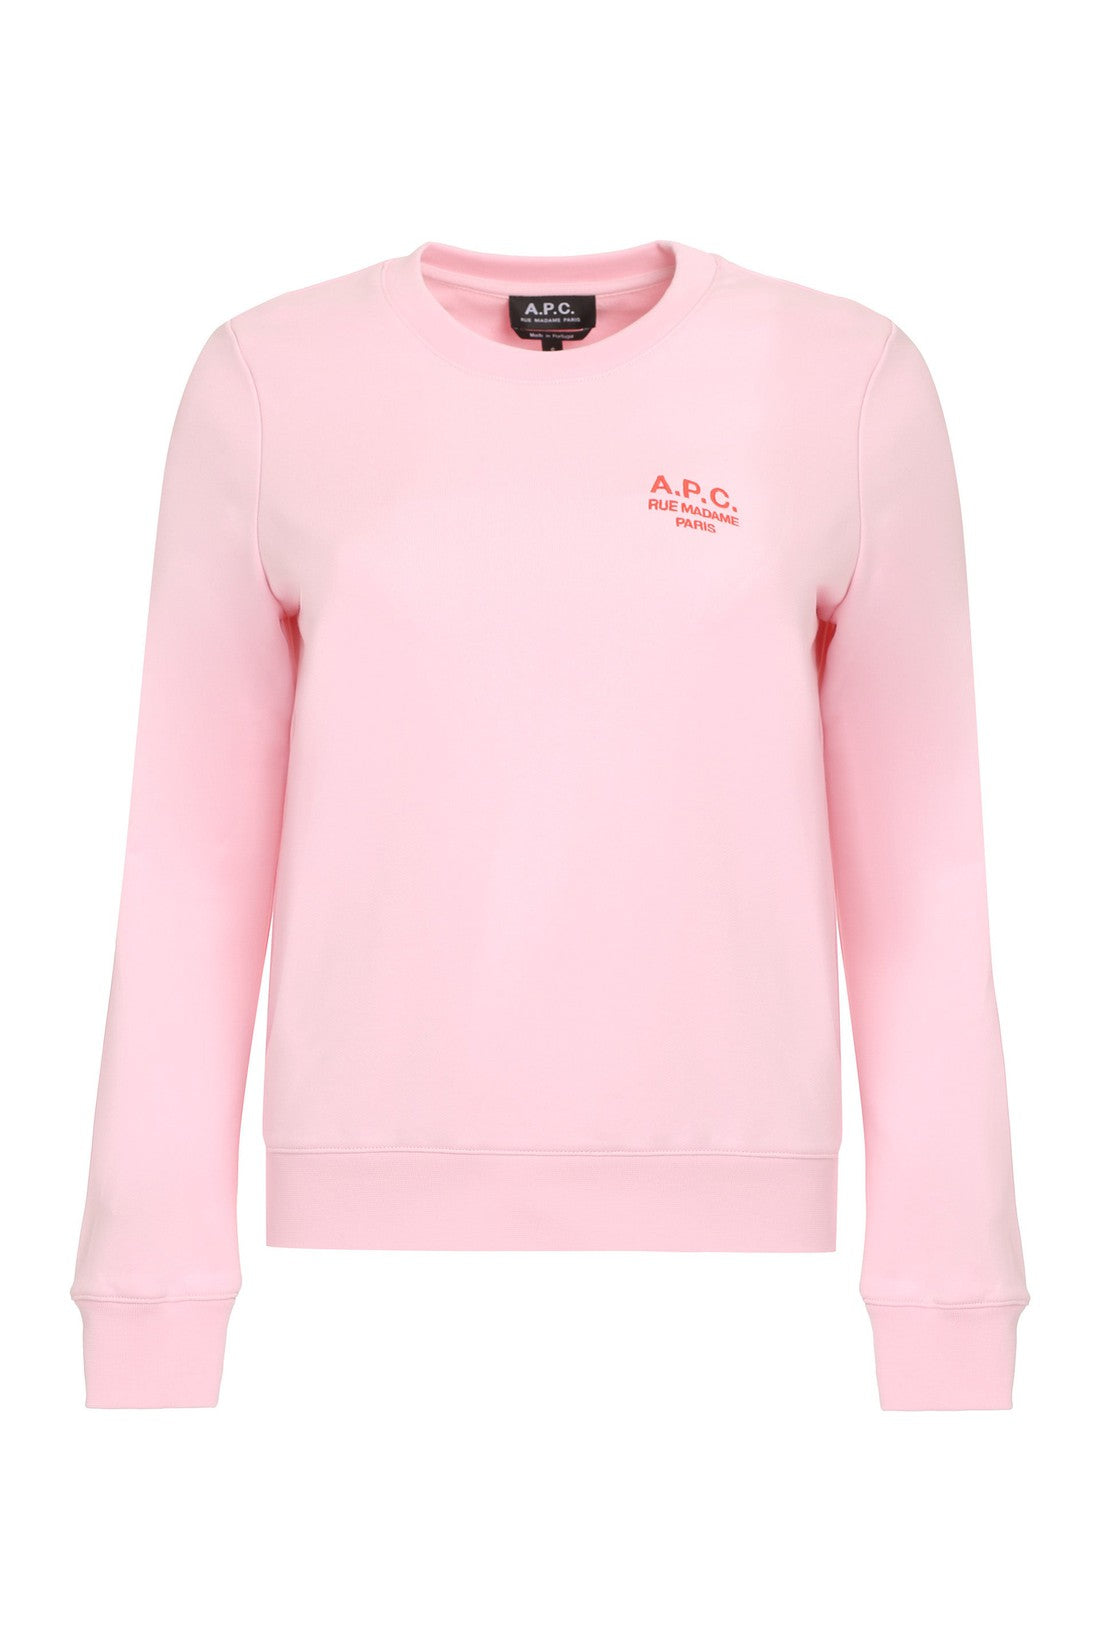 A.P.C.-OUTLET-SALE-Skye Cotton crew-neck sweatshirt-ARCHIVIST